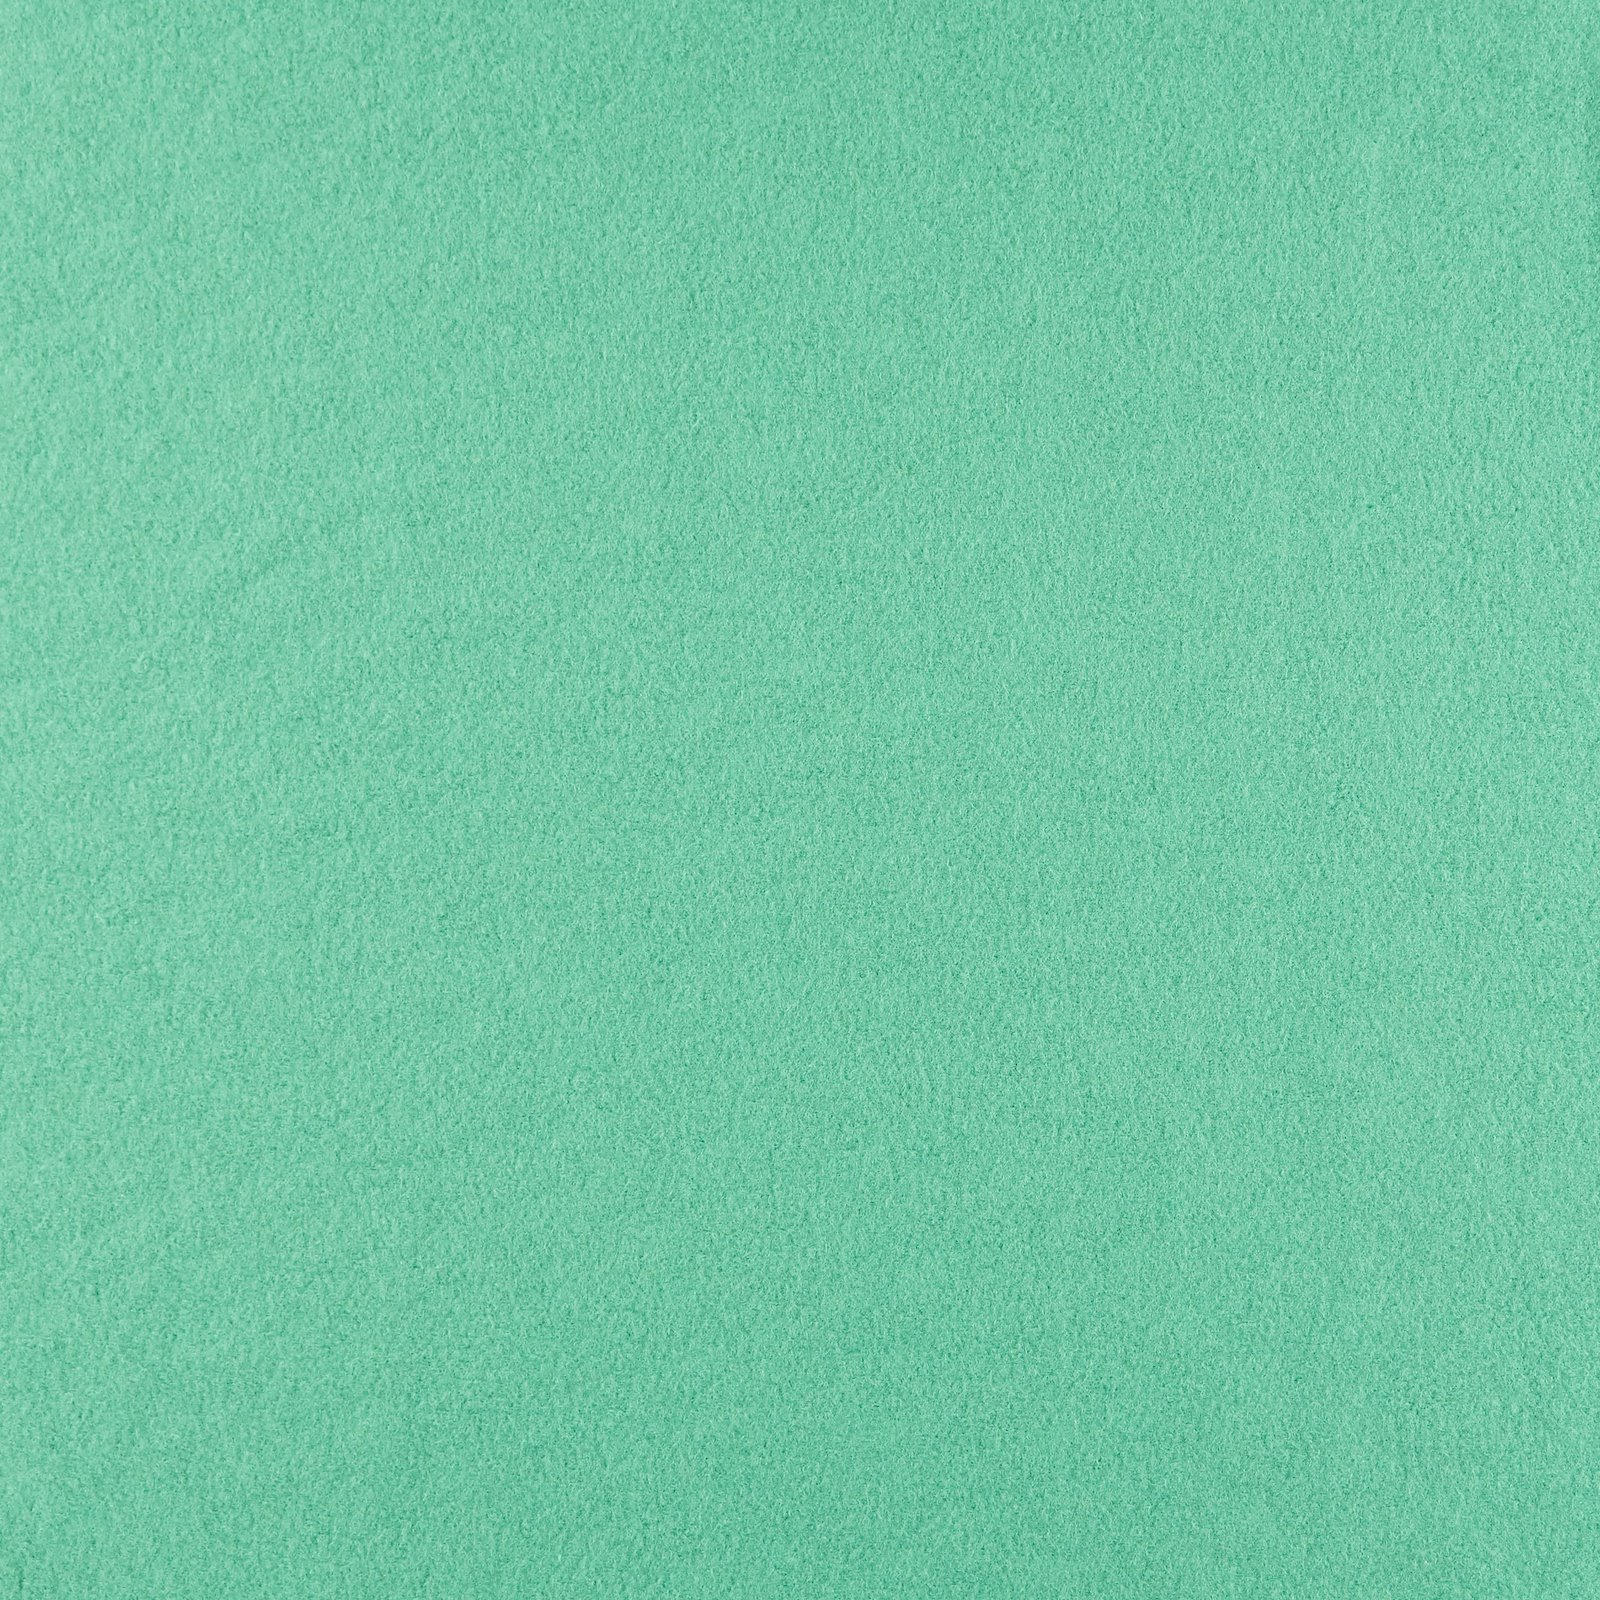 Uldfilt mint grøn melange 310392_pack_solid